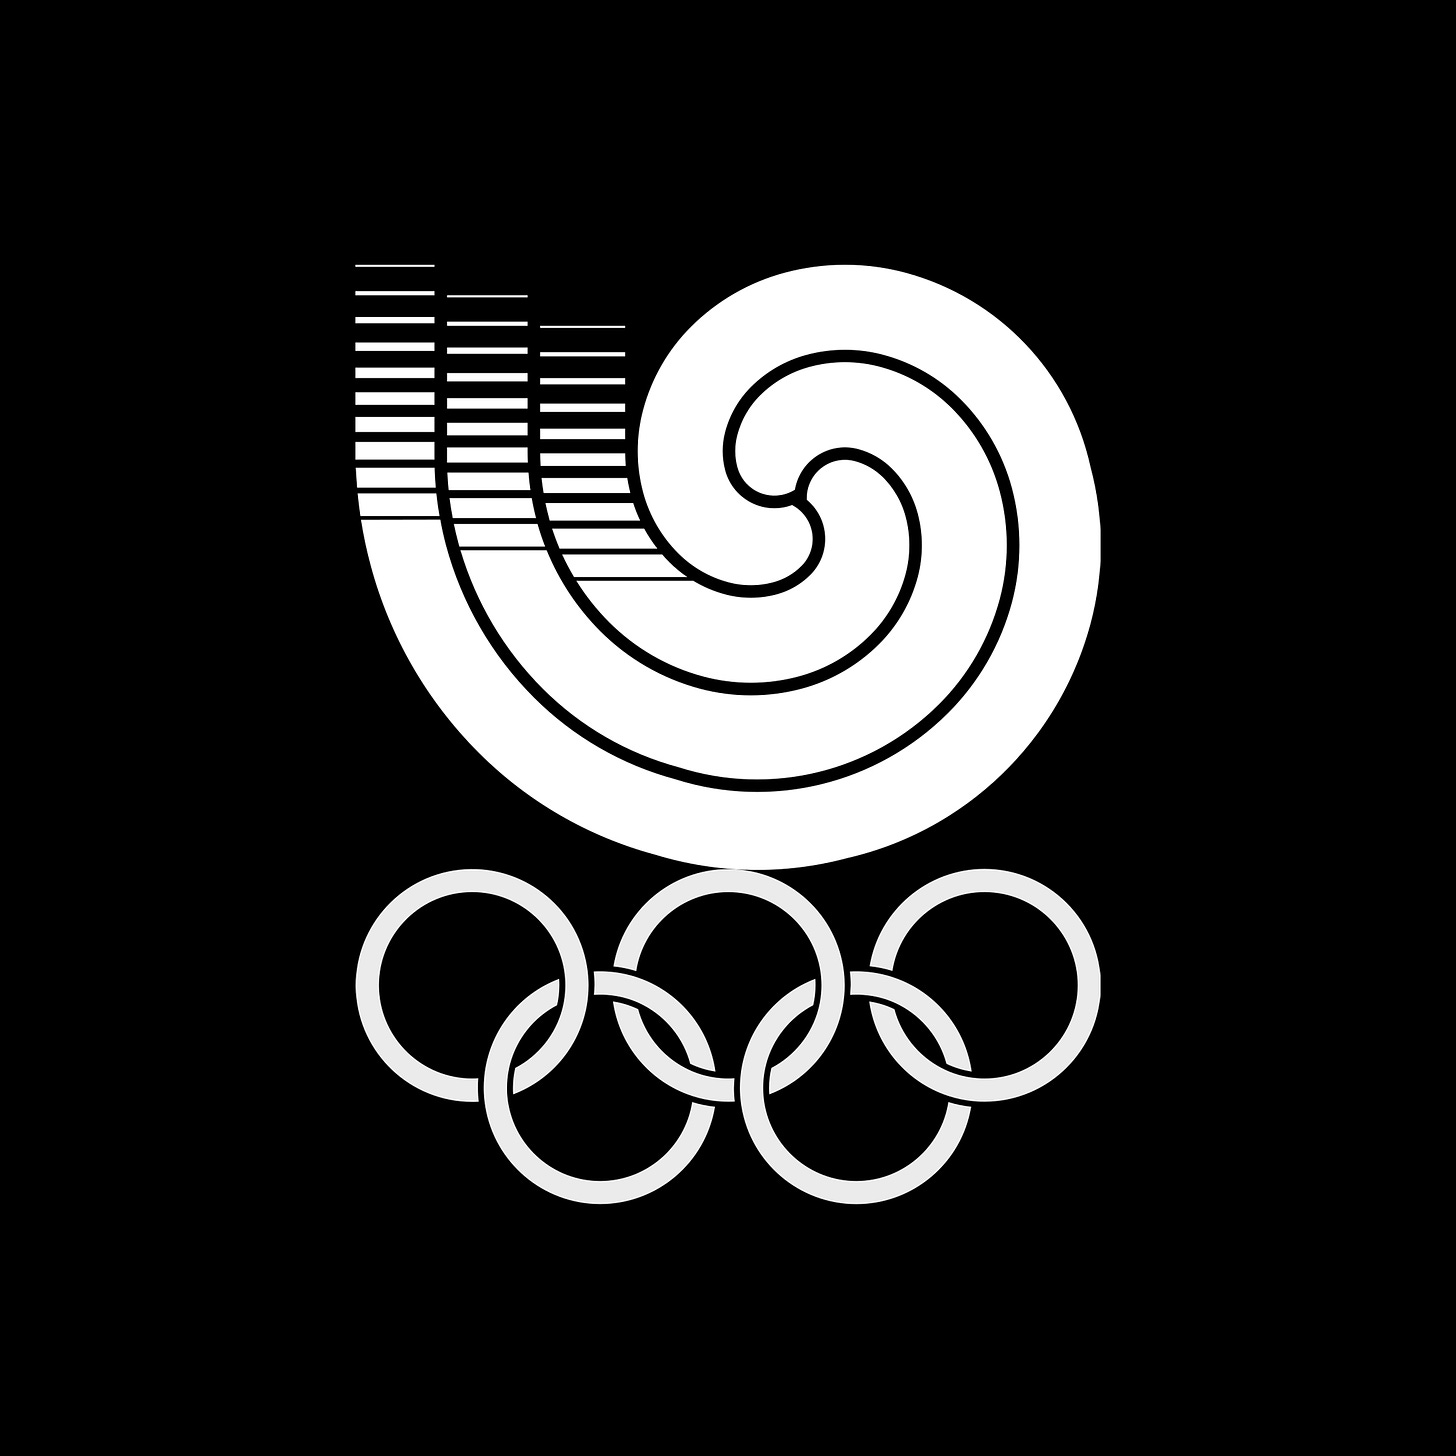 Yang Sung-Chun's 1983 logo for Seoul '88